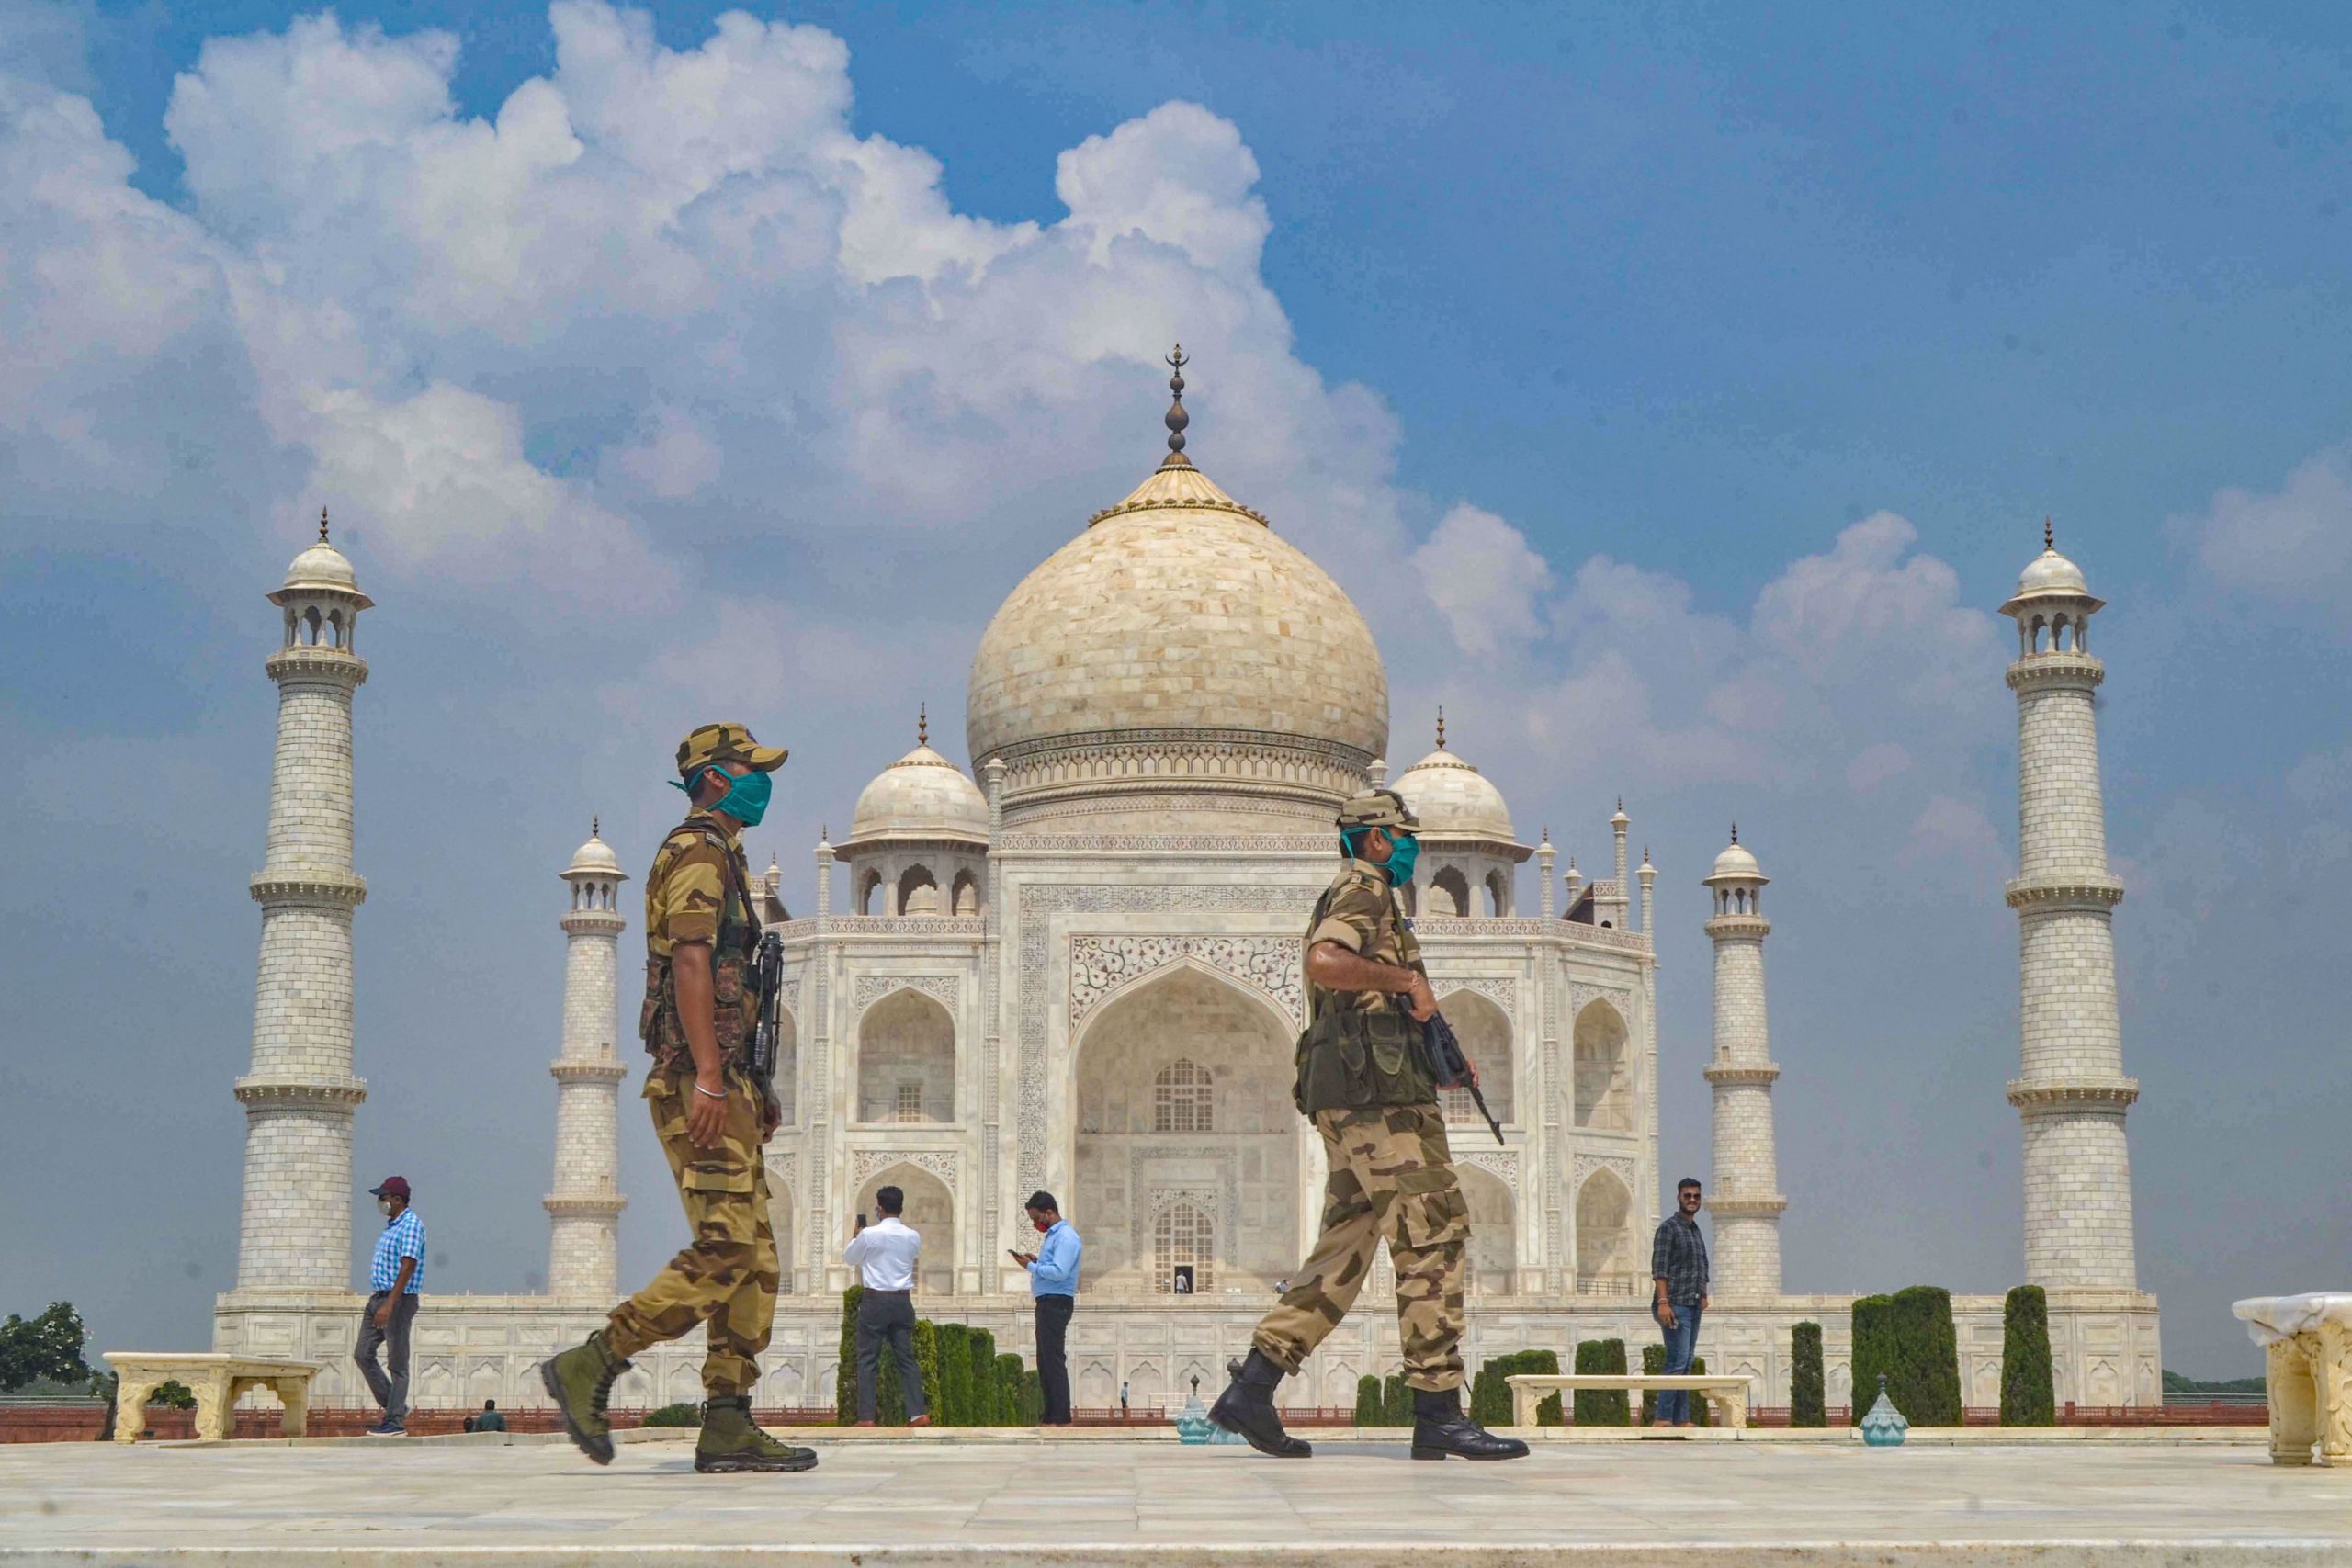 ताज महल में लहराया गया भगवा झंडा, चार युवक गिरफ्तार